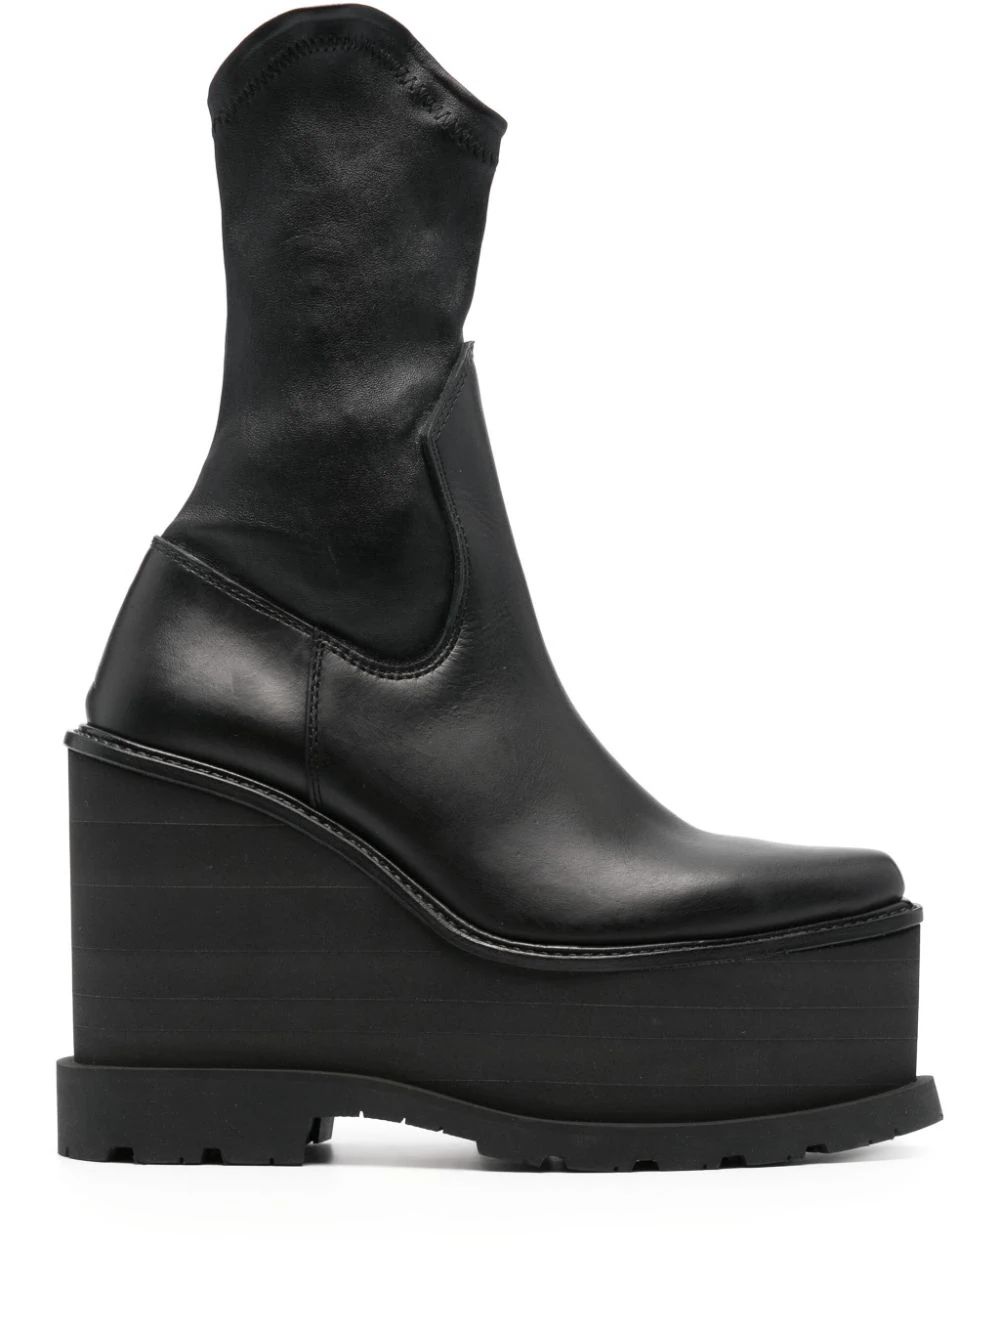 Sacai 140mm Leather Wedge Cowboy Boots - Farfetch | Farfetch Global